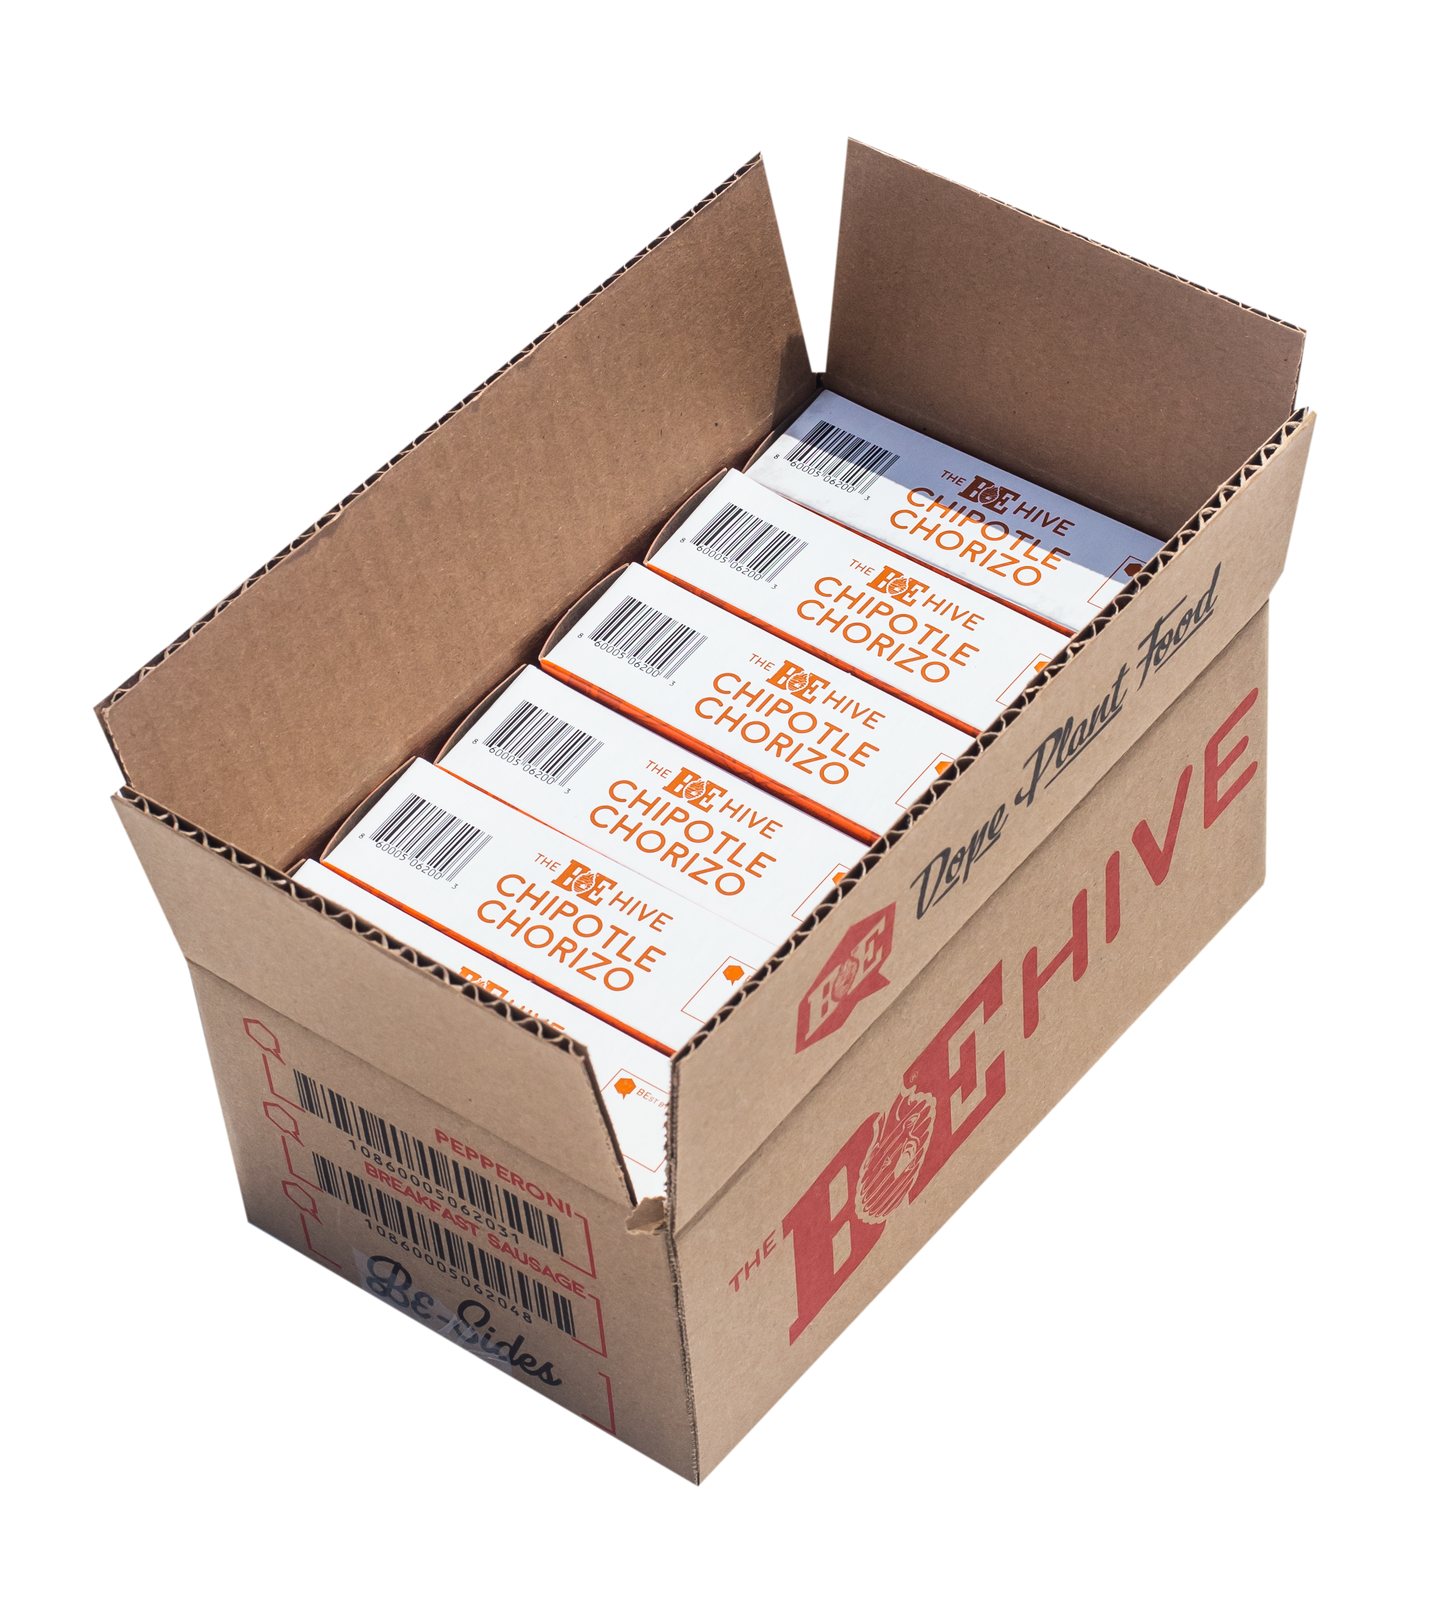 Vegan chorizo 6-pack box